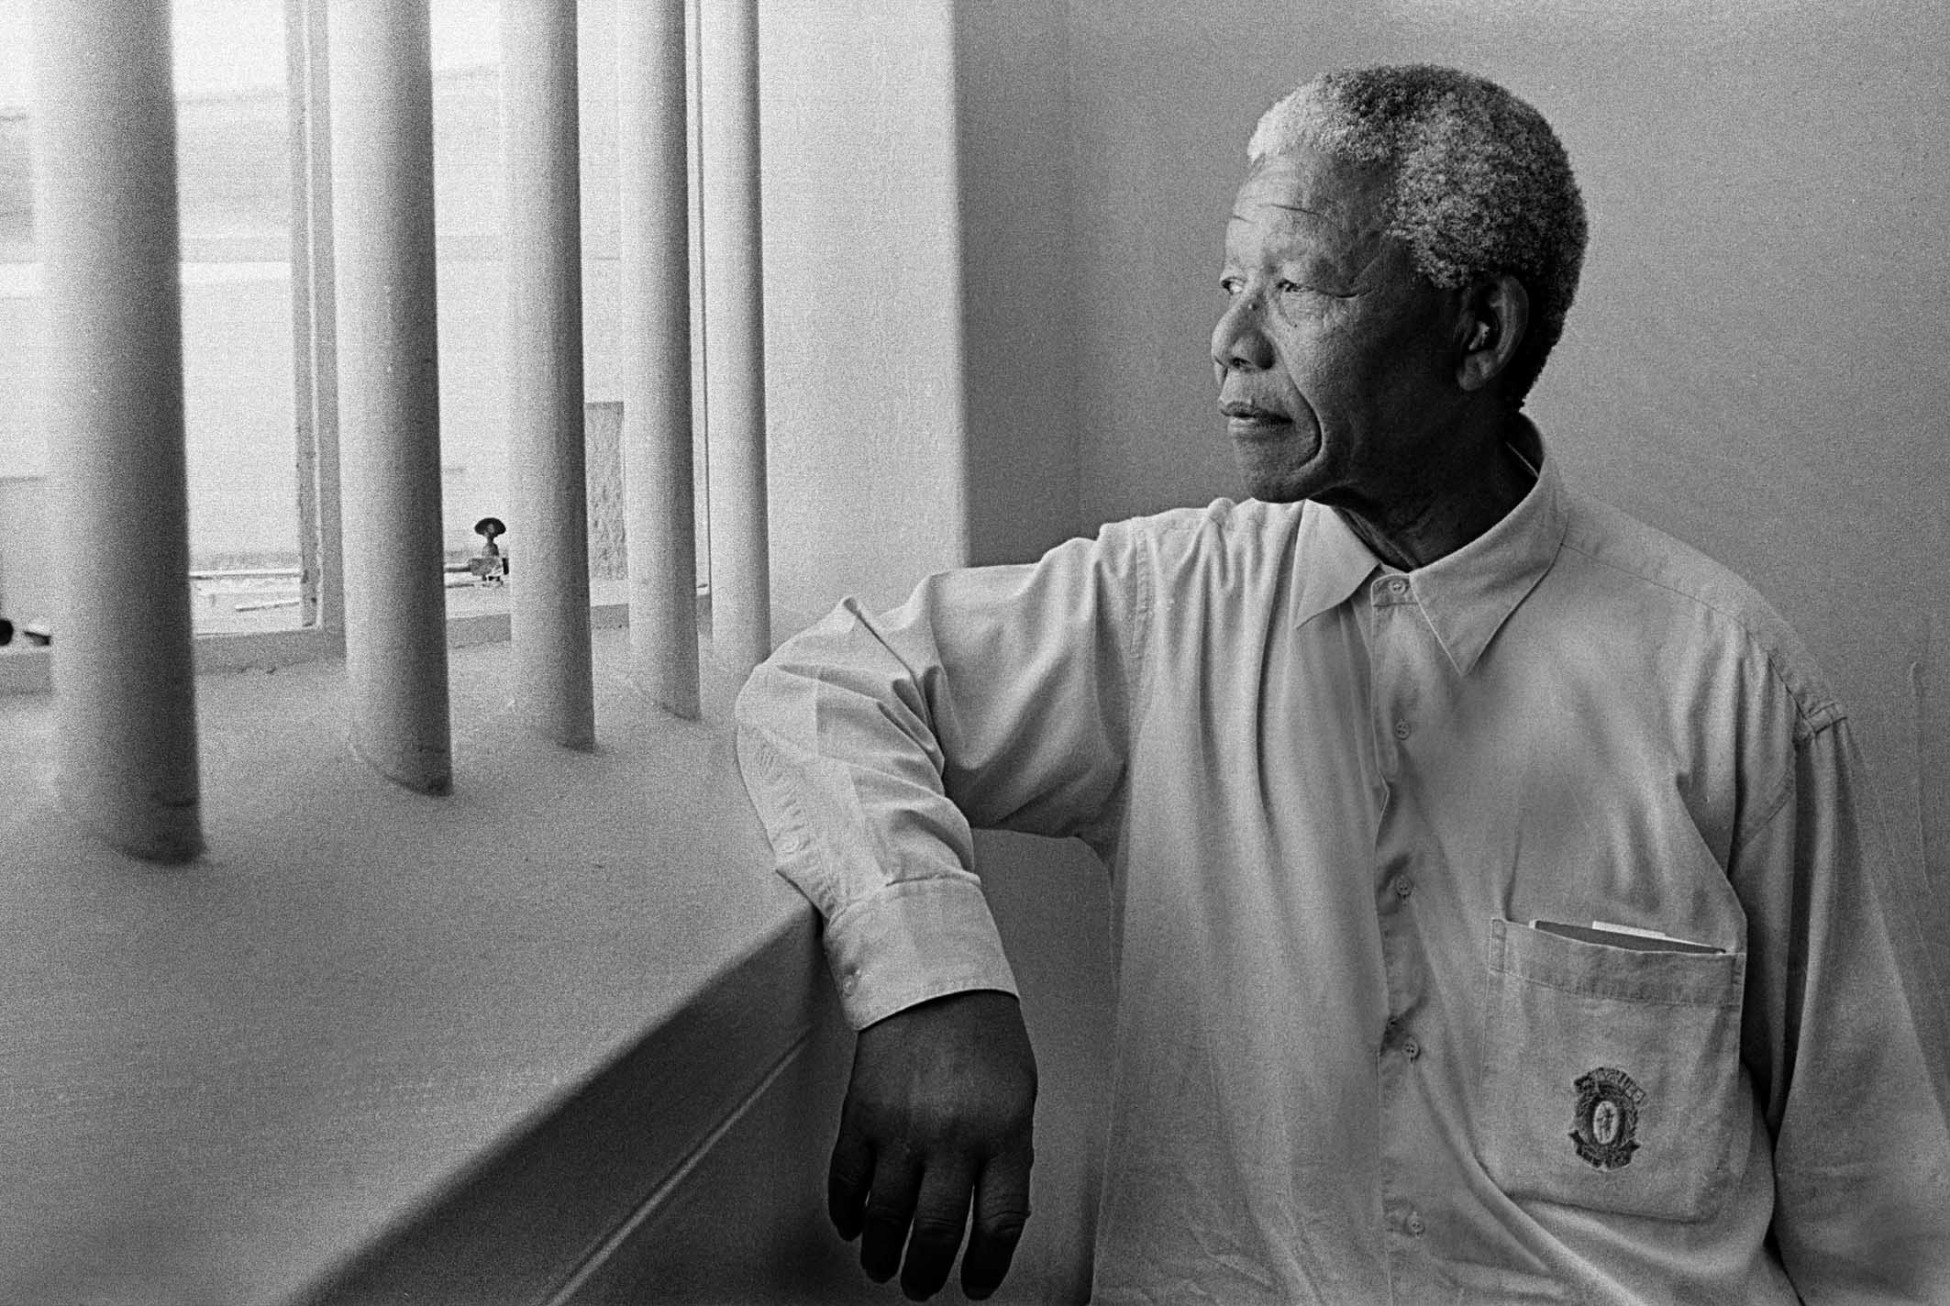 Νέλσον Μαντέλα: Σε δημοπρασία το κλειδί του κελιού που ήταν φυλακισμένος – Αντιδρά η κυβέρνηση της Νότιας Αφρικής